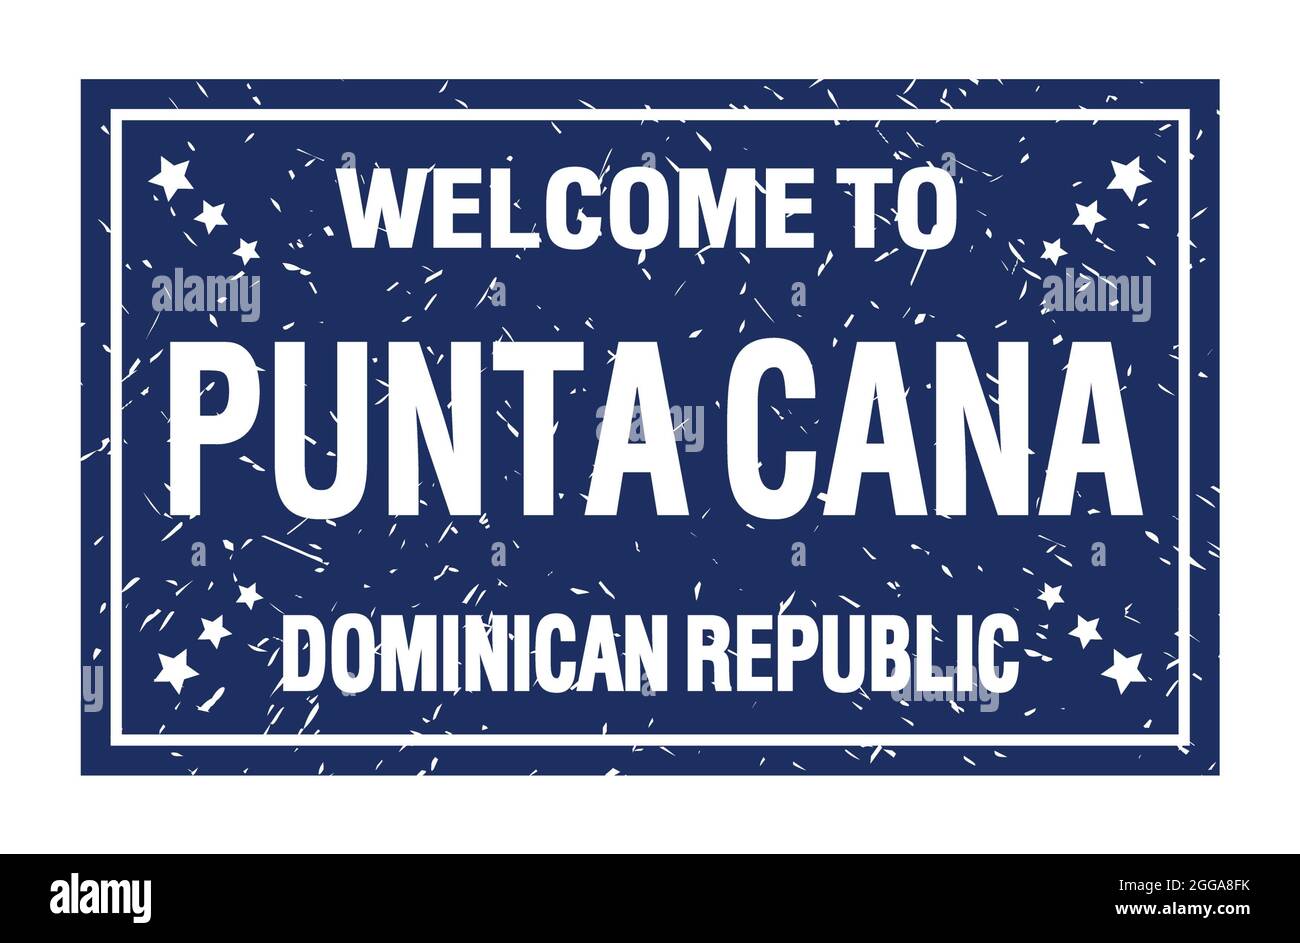 BIENVENUE À PUNTA CANA - RÉPUBLIQUE DOMINICAINE, mots écrits sur le drapeau rectangle bleu Banque D'Images